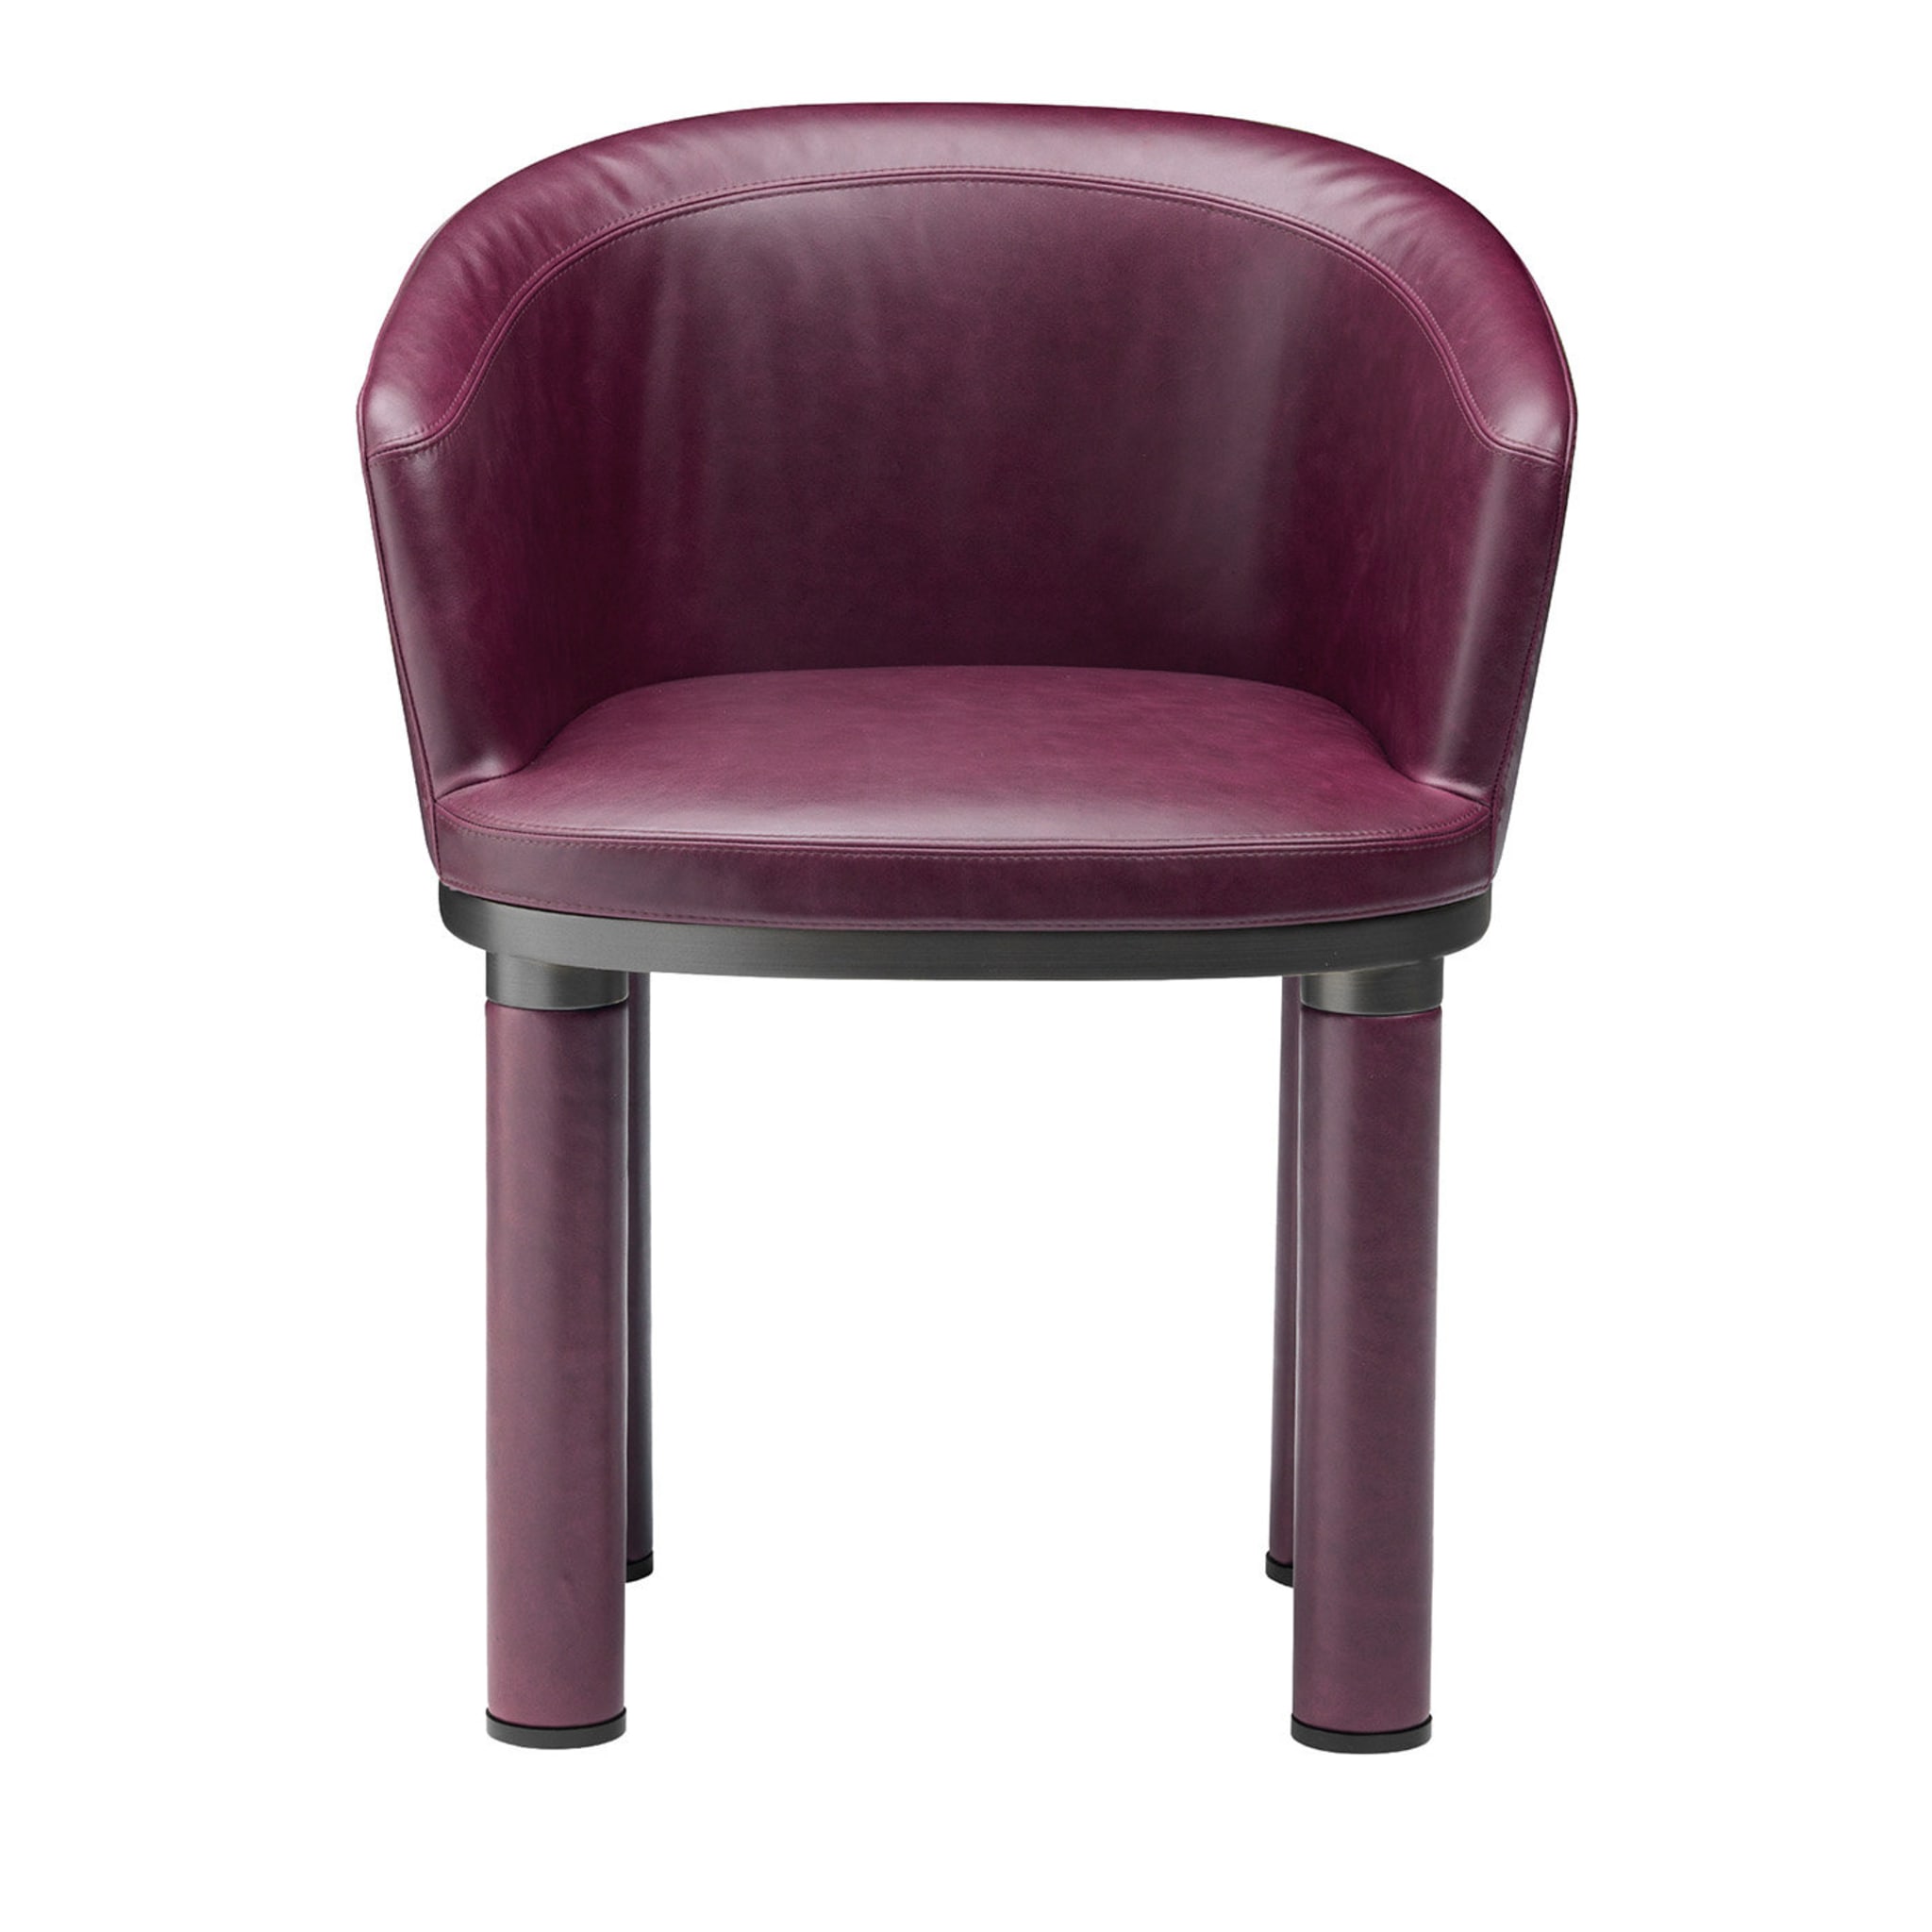 Chaise violette audacieuse - Vue principale